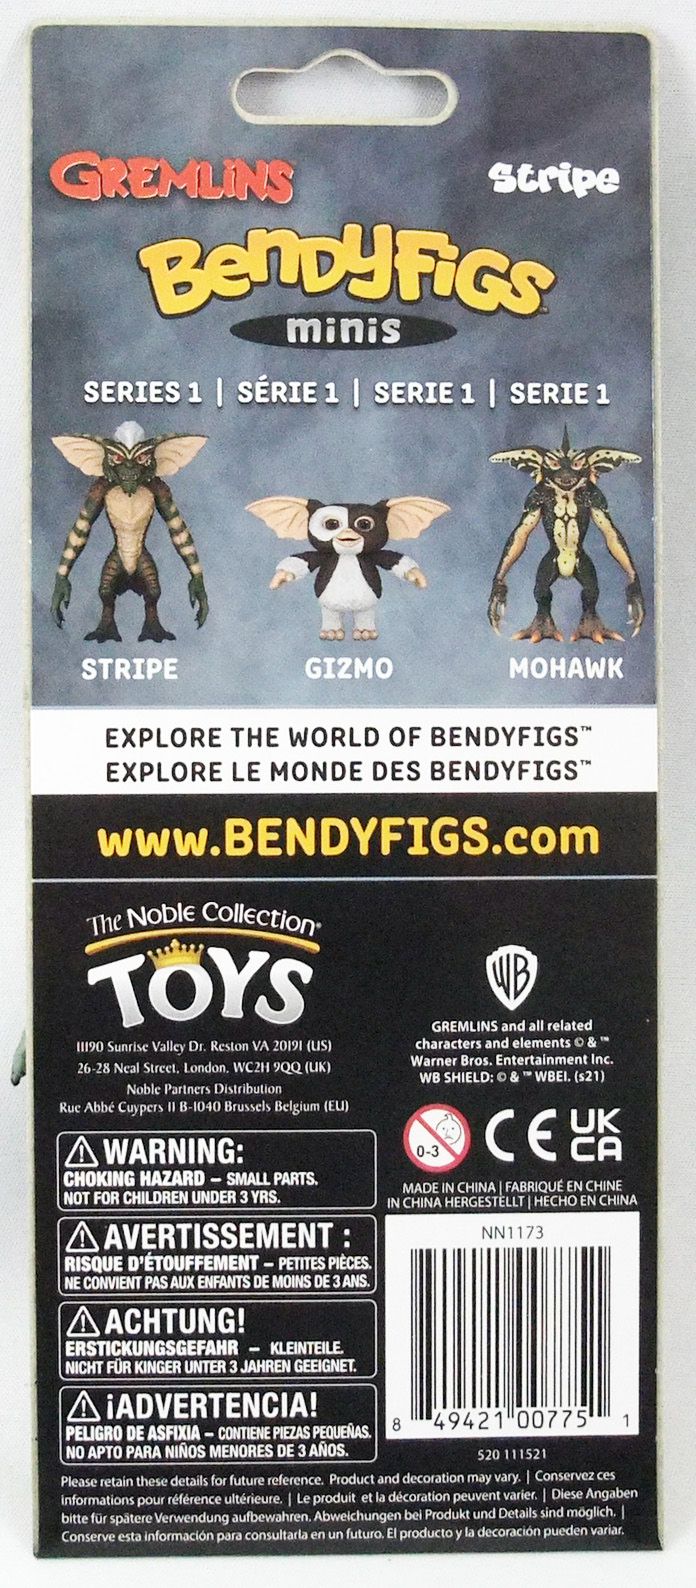 Figurine Bendyfigs Mohawk Gremlins New